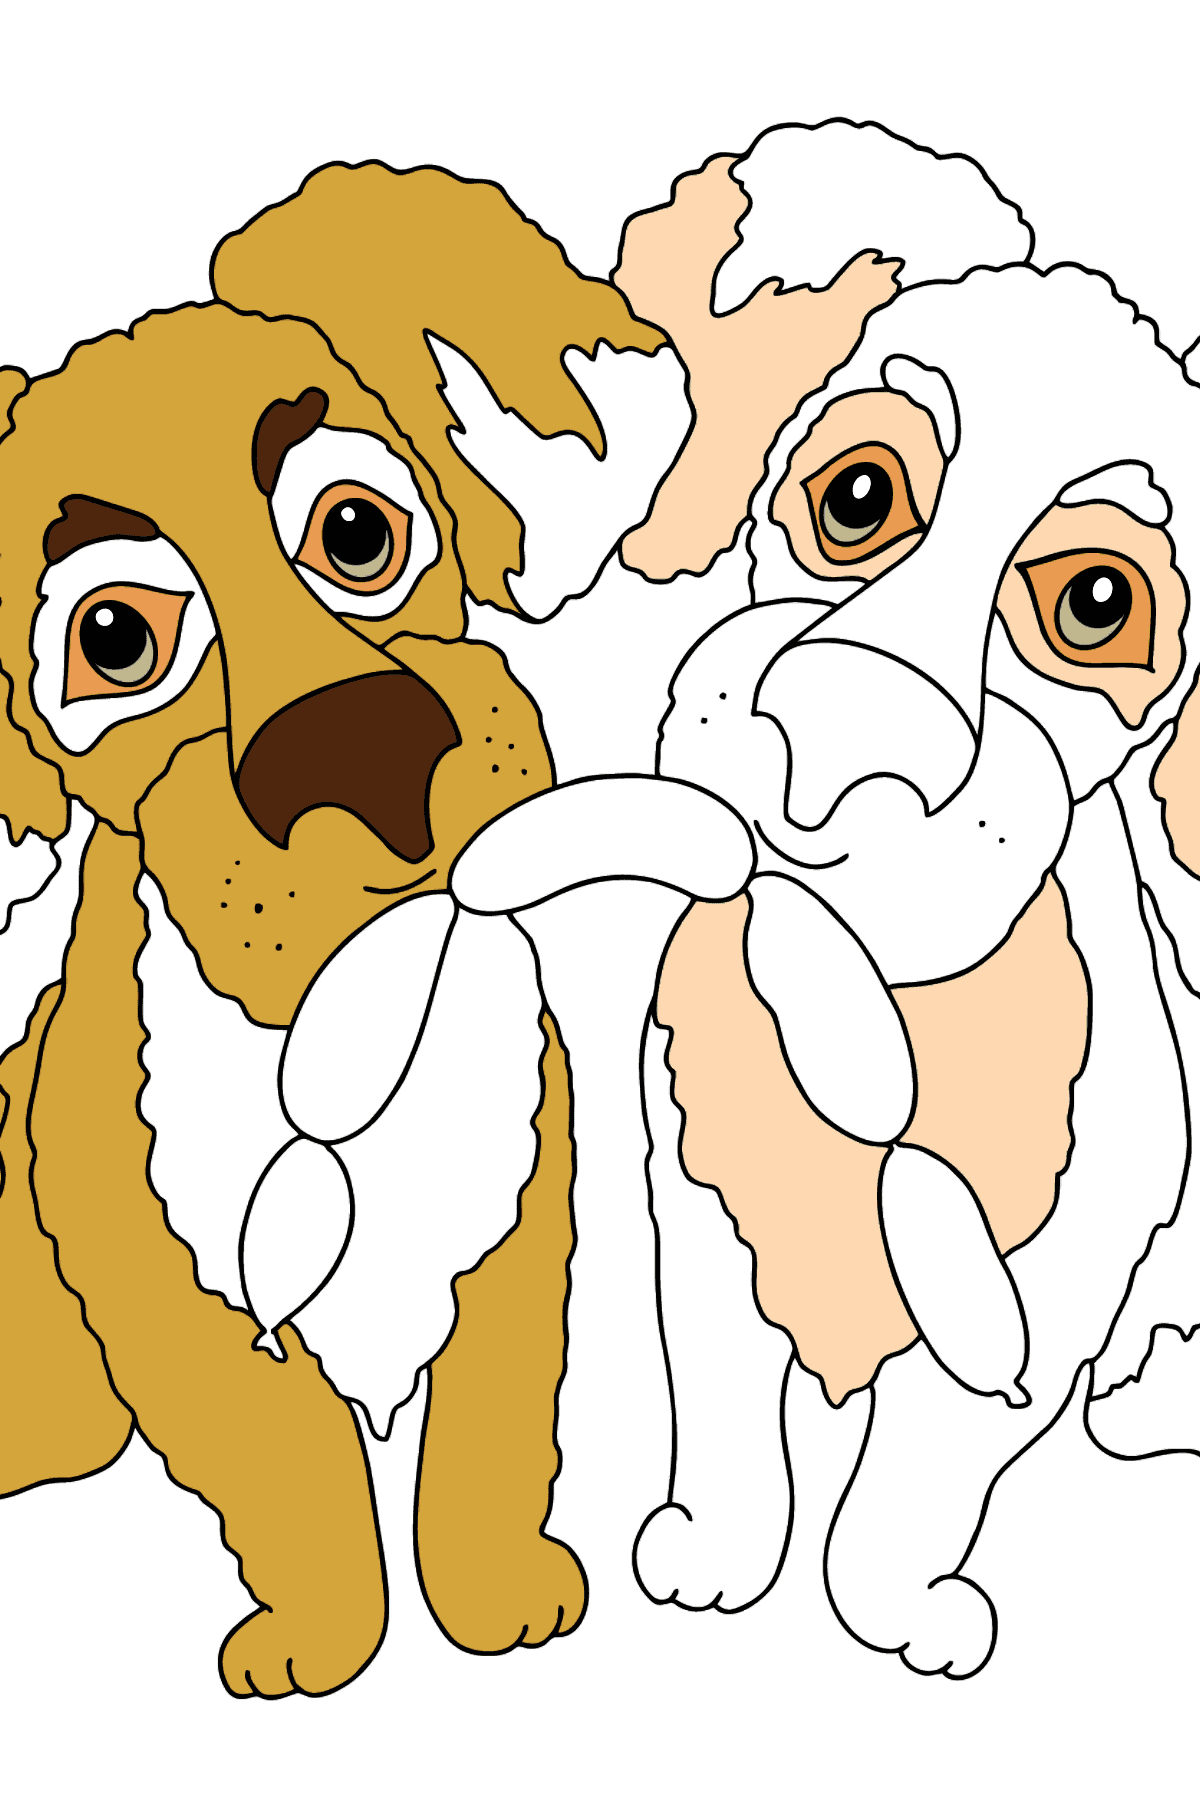 Раскраска Собаки (просто) - Картинки для Детей